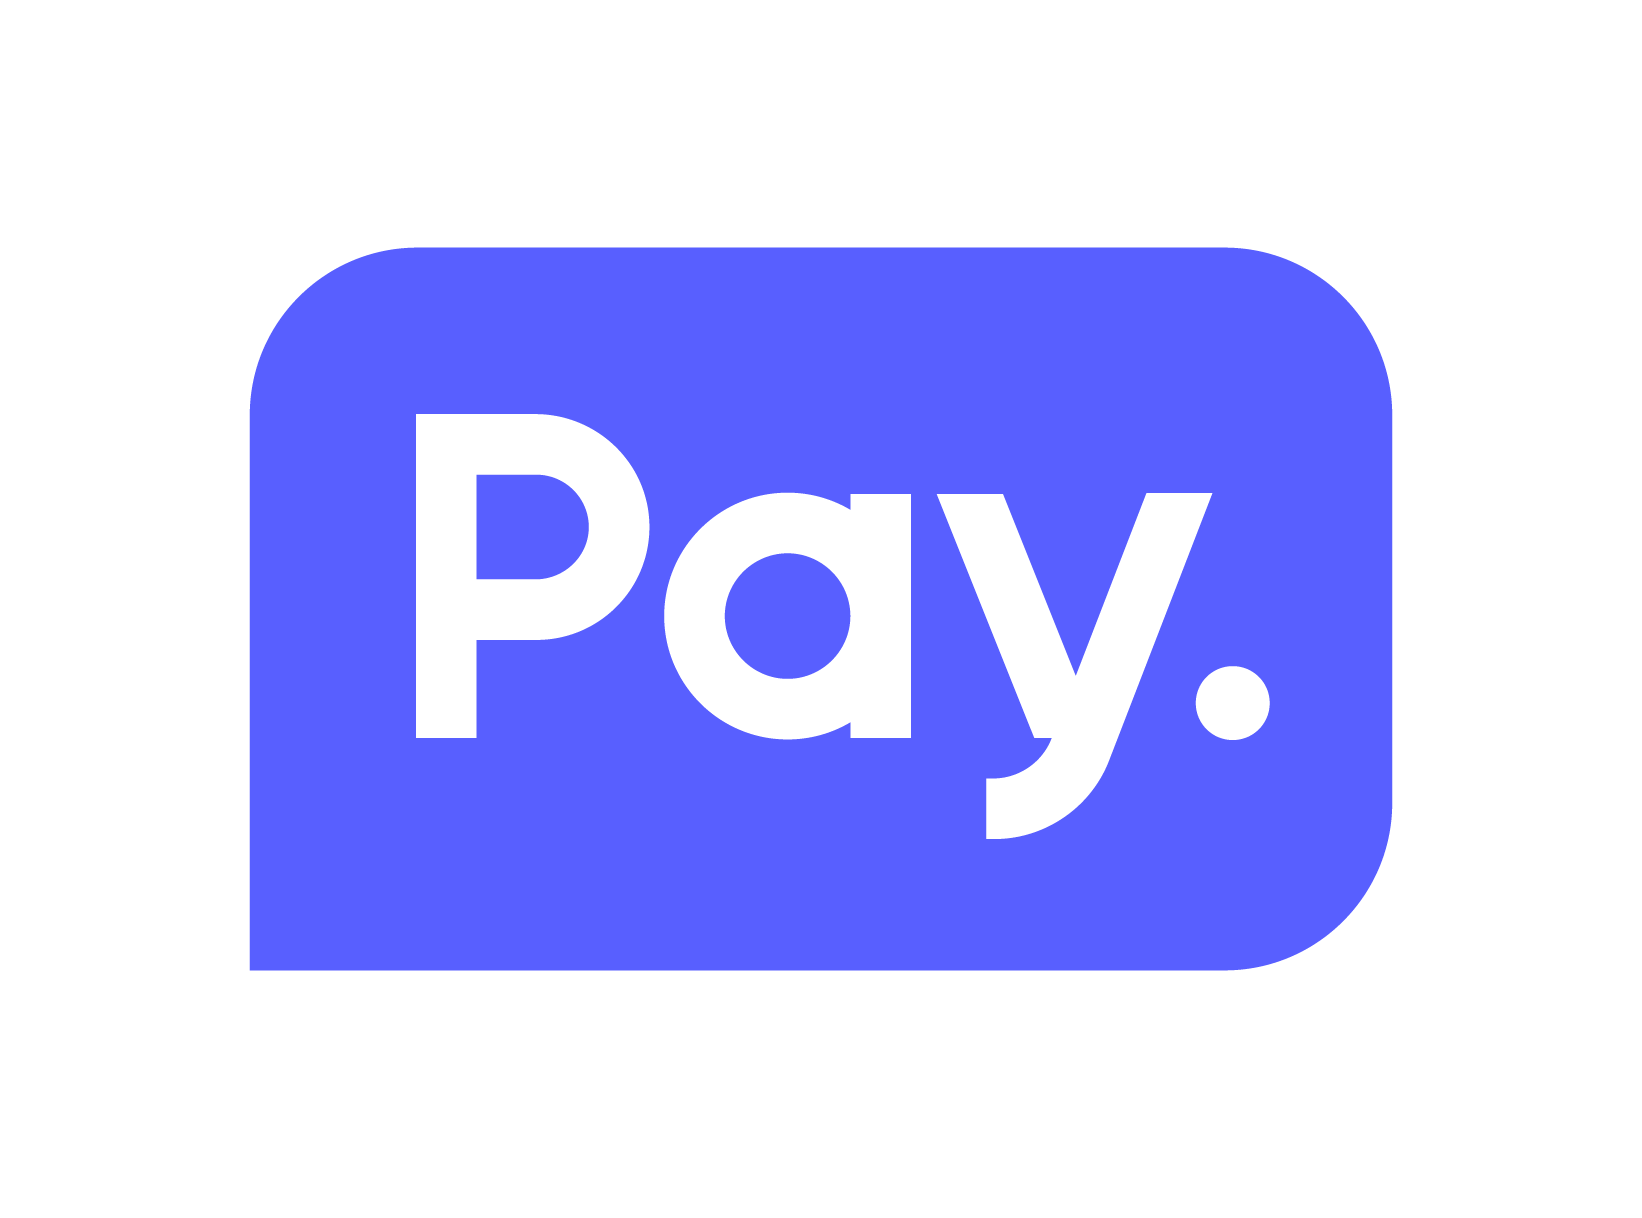 Pay.nl